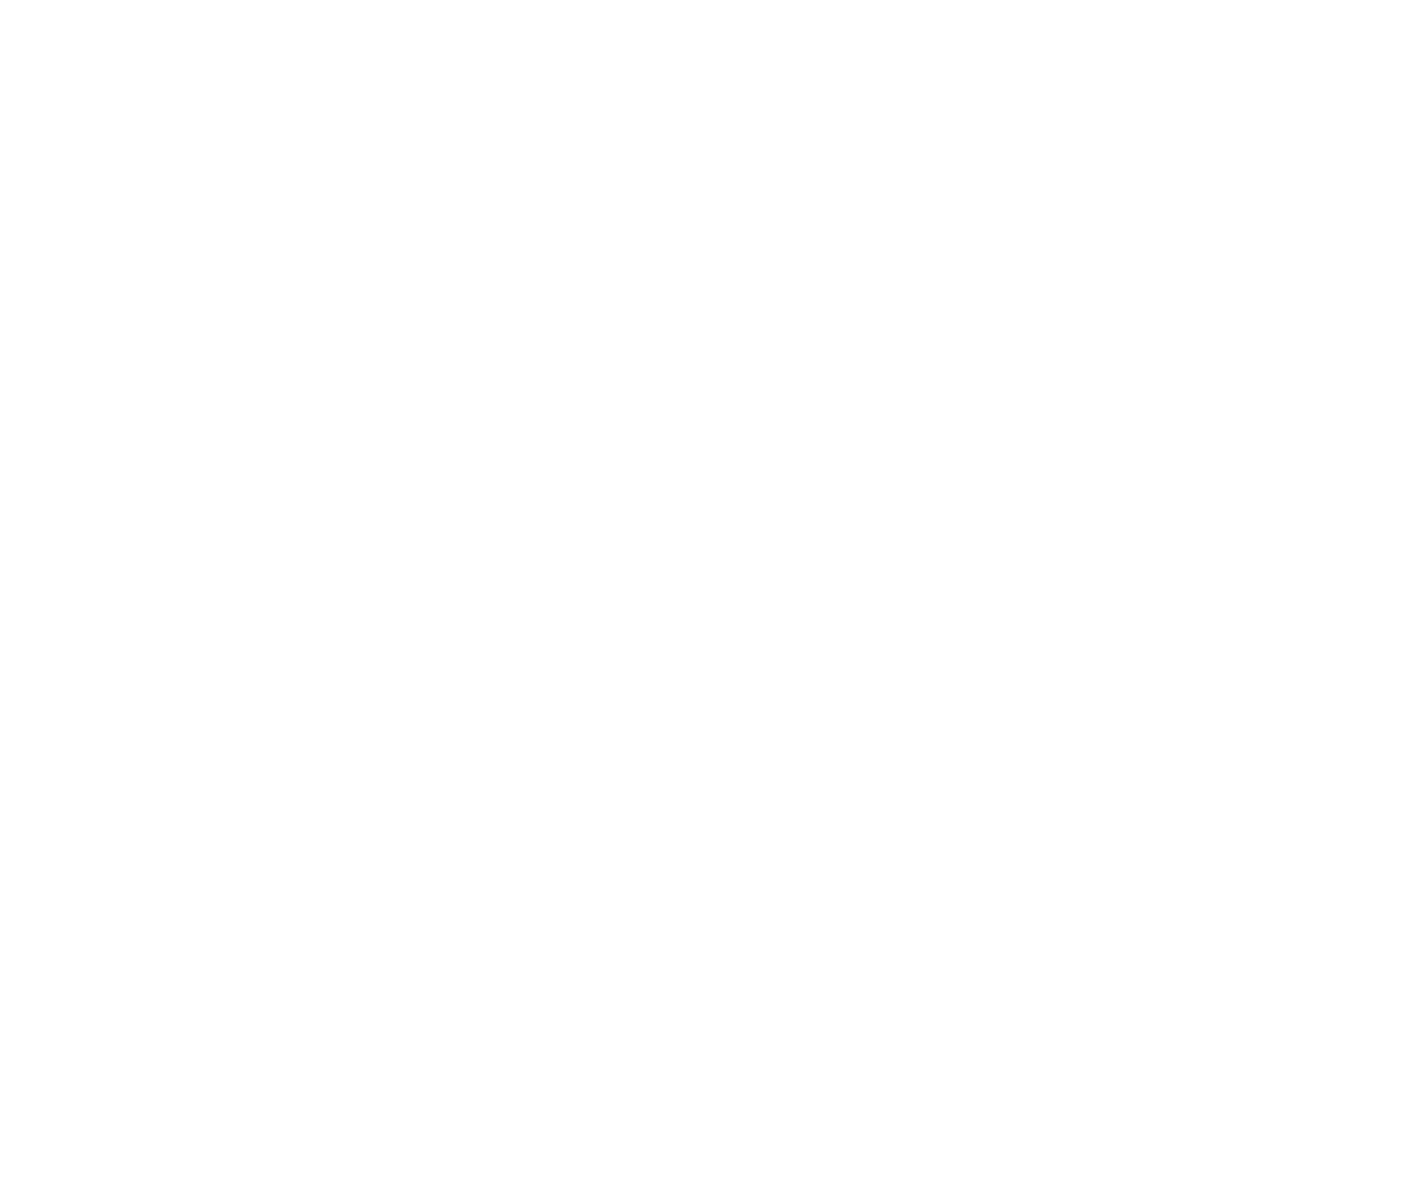 Tatler Schools’ Guide 2021 – Best Prep School